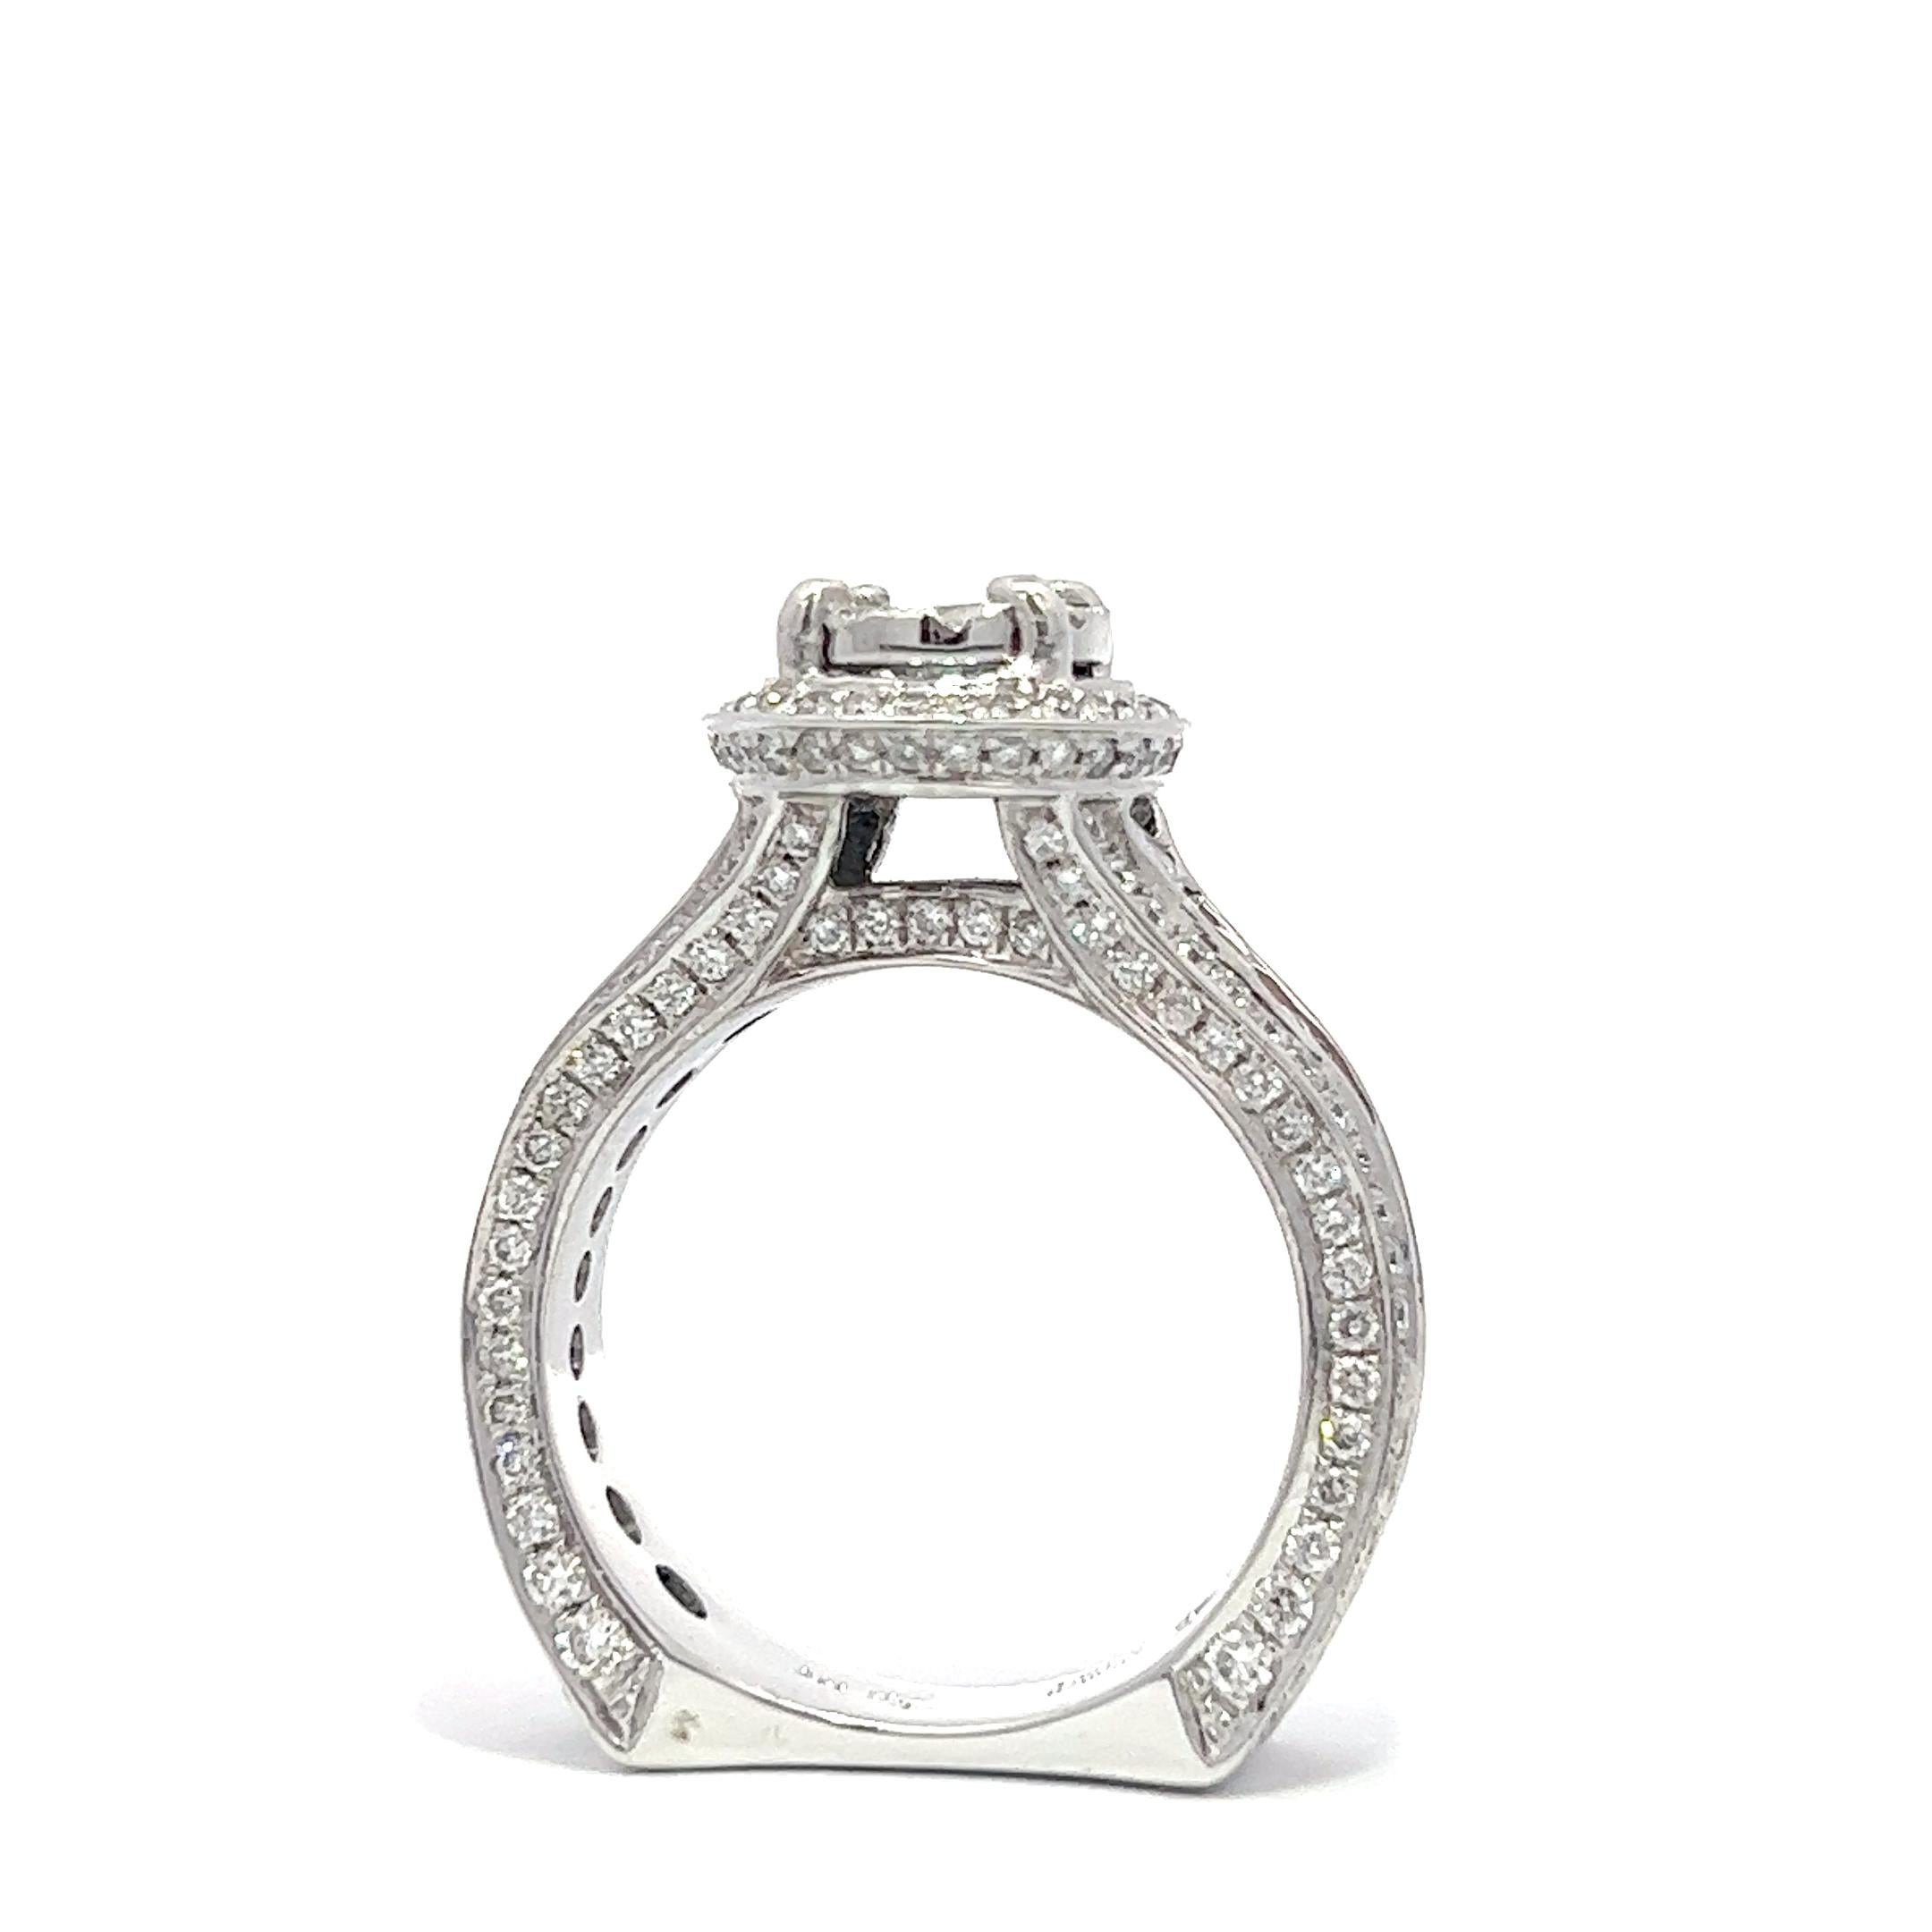 Dieser exquisite Verlobungsring besteht aus 2,64 ct. natürlichen Diamanten der Farbe G-H und der Reinheit VS2-SI, gefasst in 14 Karat Weißgold. Es ist ein einzigartiges Stück, das zweifellos Ihre Liebe und Bewunderung für Ihren Partner ausdrücken